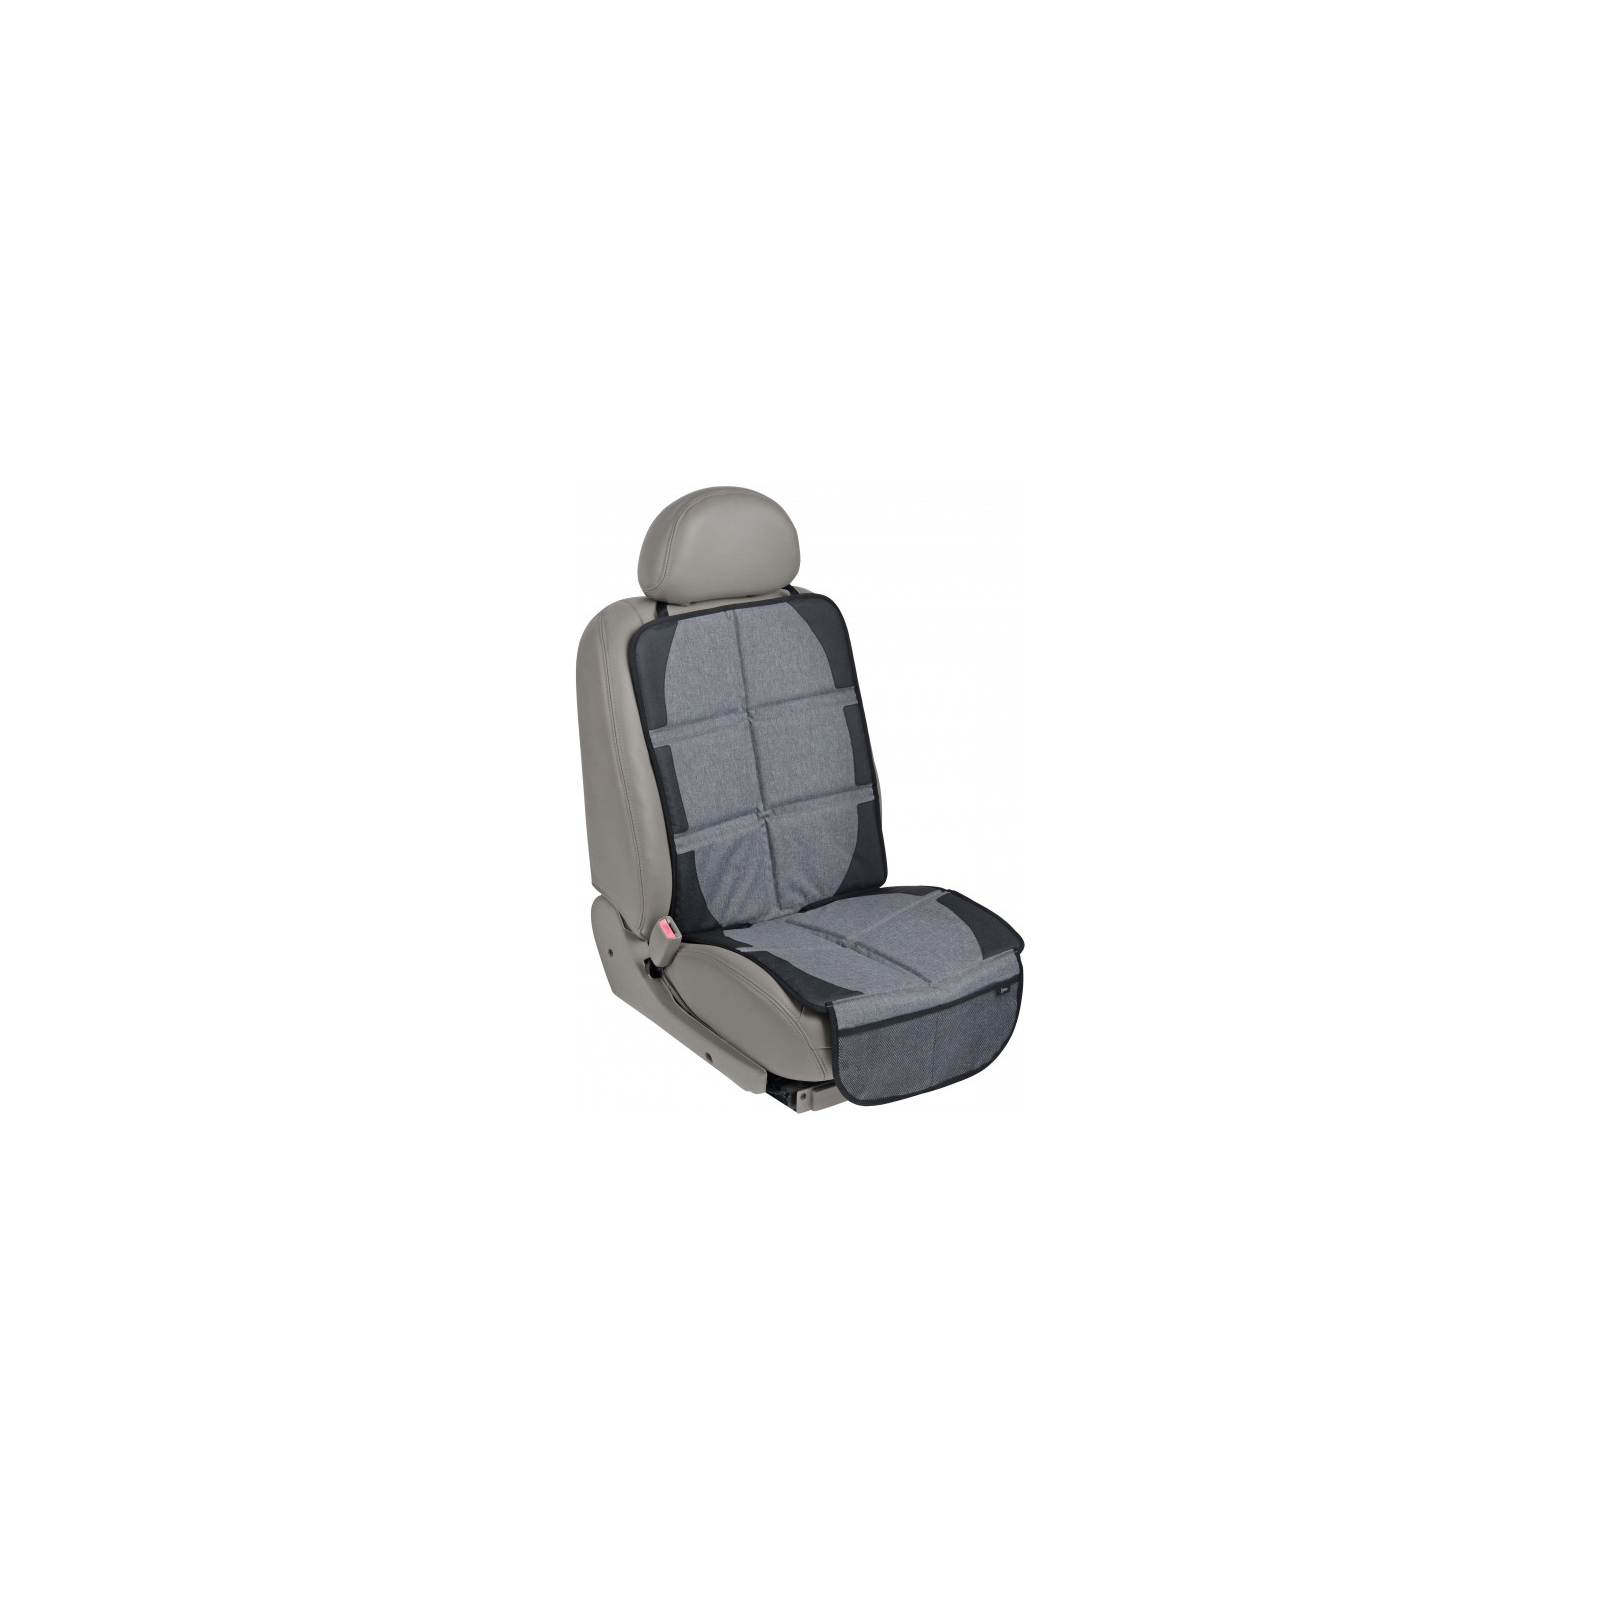 Защитный коврик Bugs для автомобильного сиденья (6901319001044)